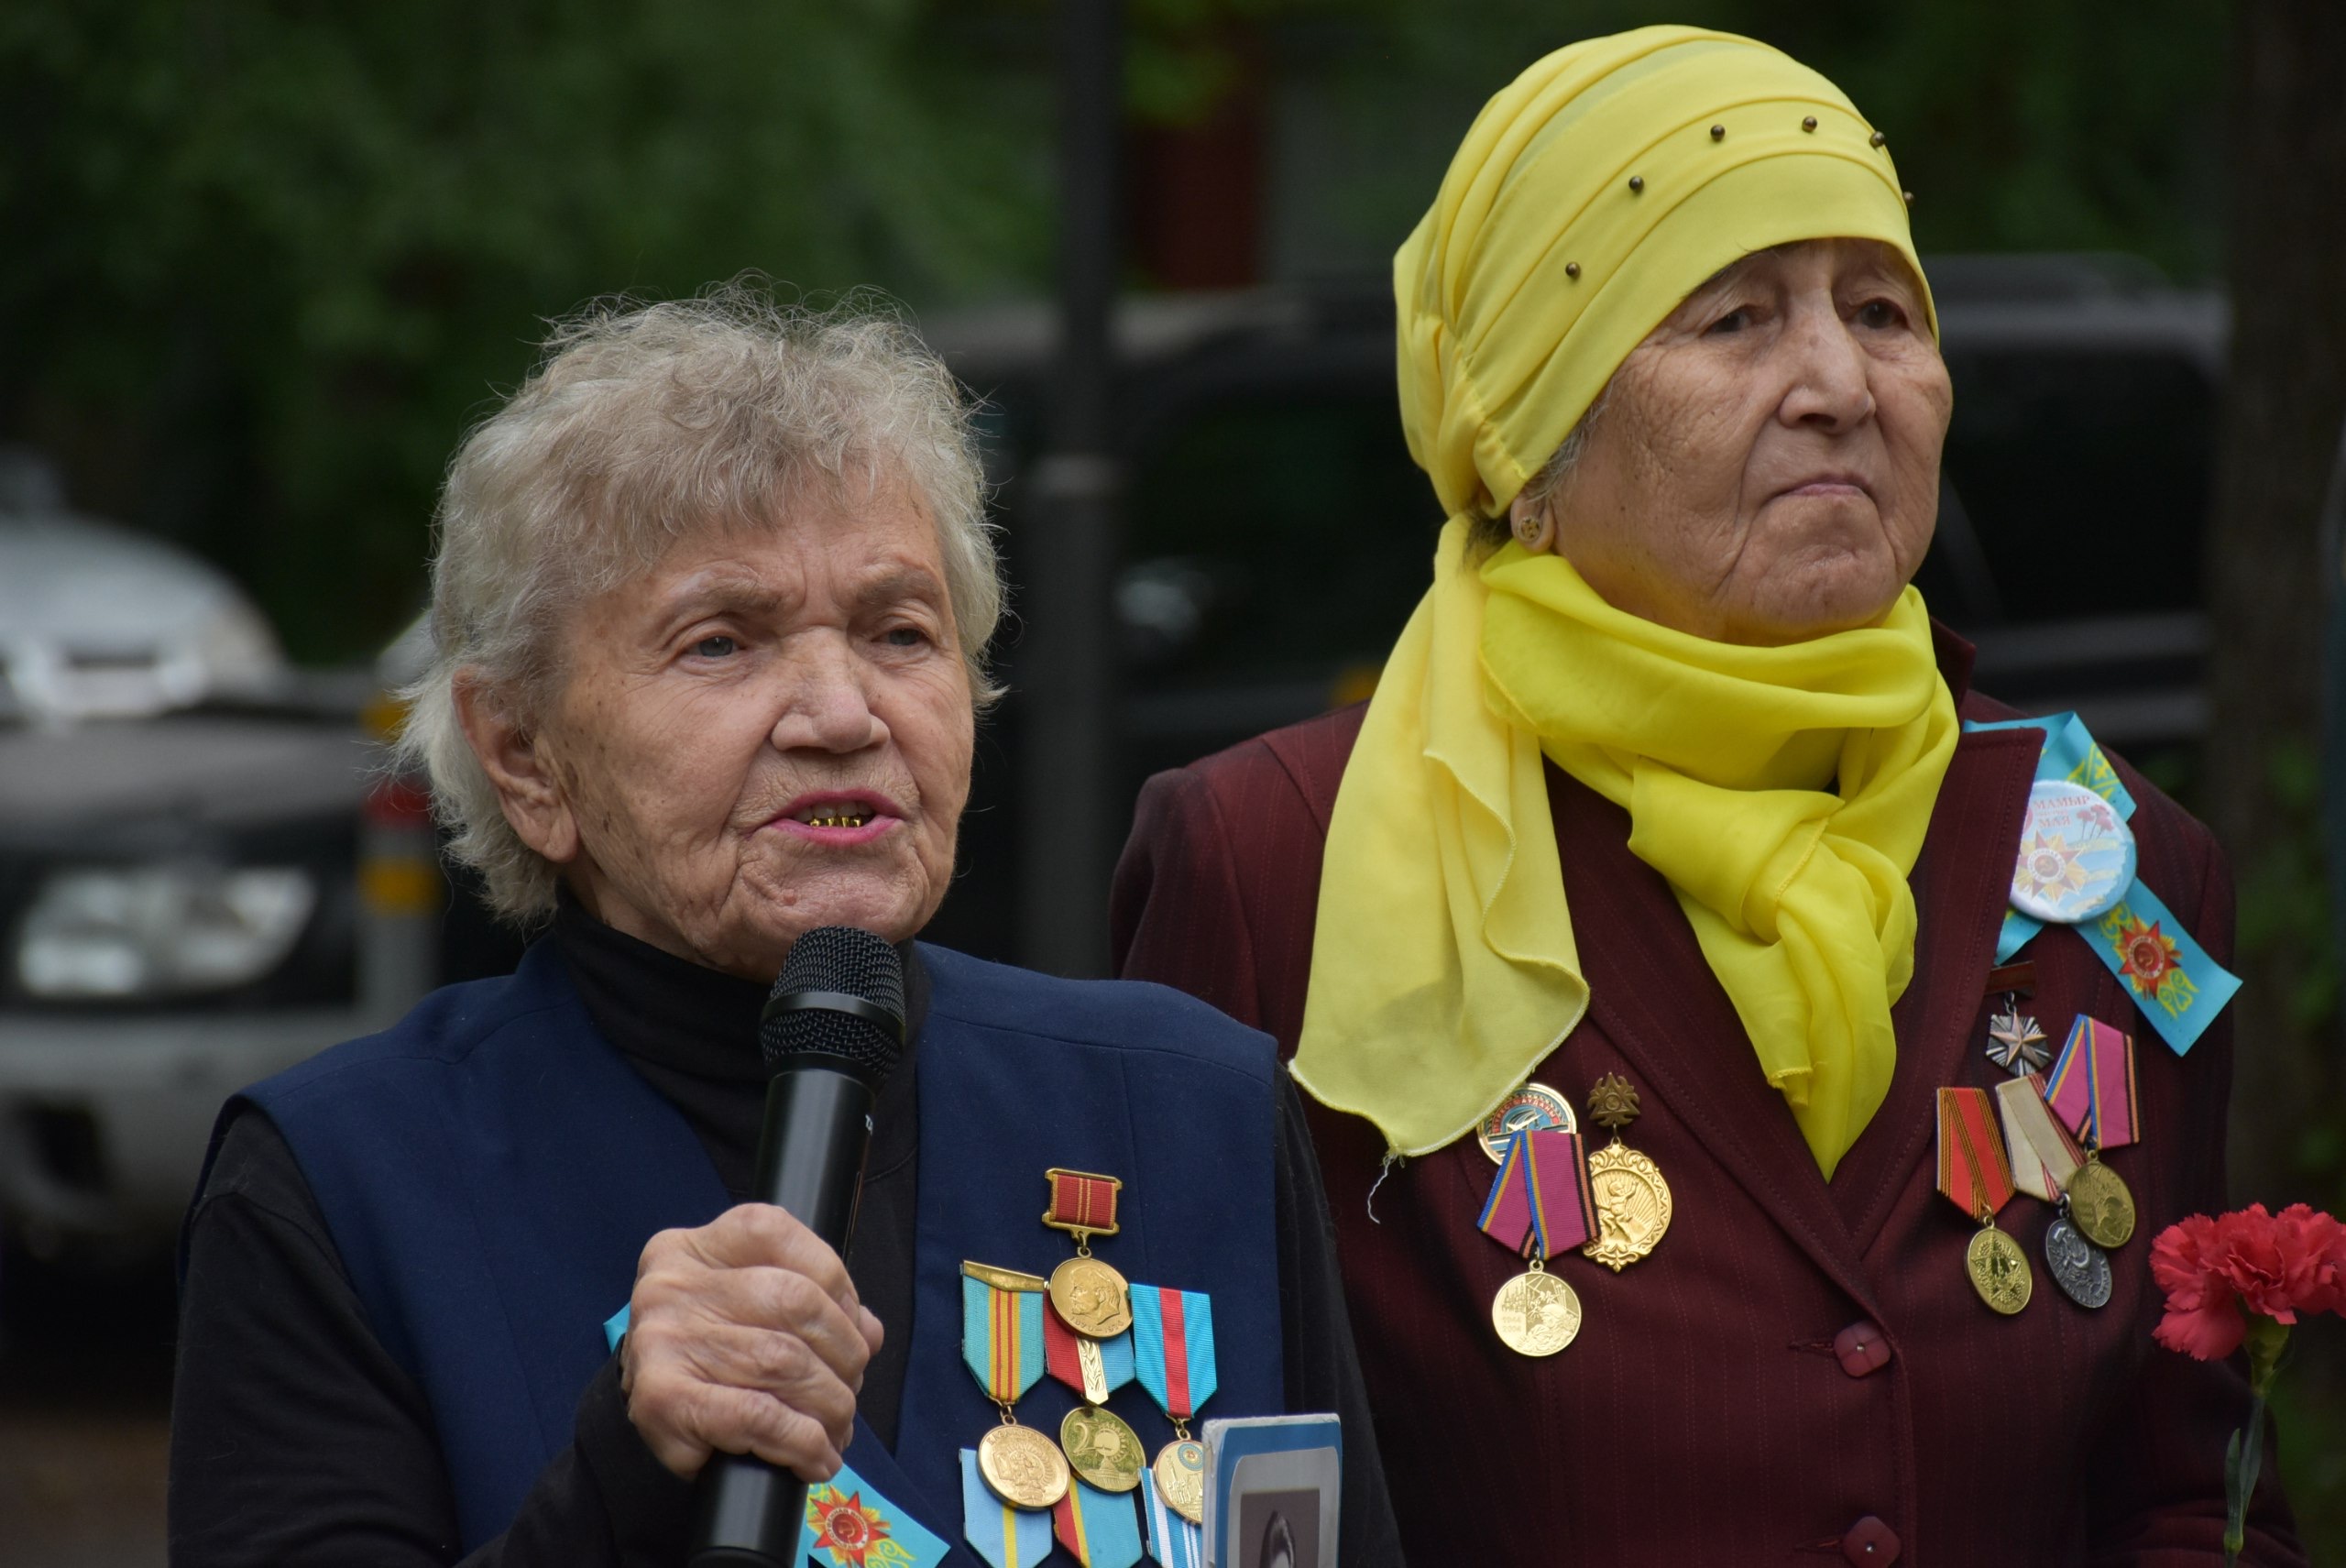 Вы сейчас просматриваете Акиматом Турксибского района города Алматы проведены торжественные собрания по возложению цветов памятникам героев ВОВ в честь празднования 9 мая — Дня победы.